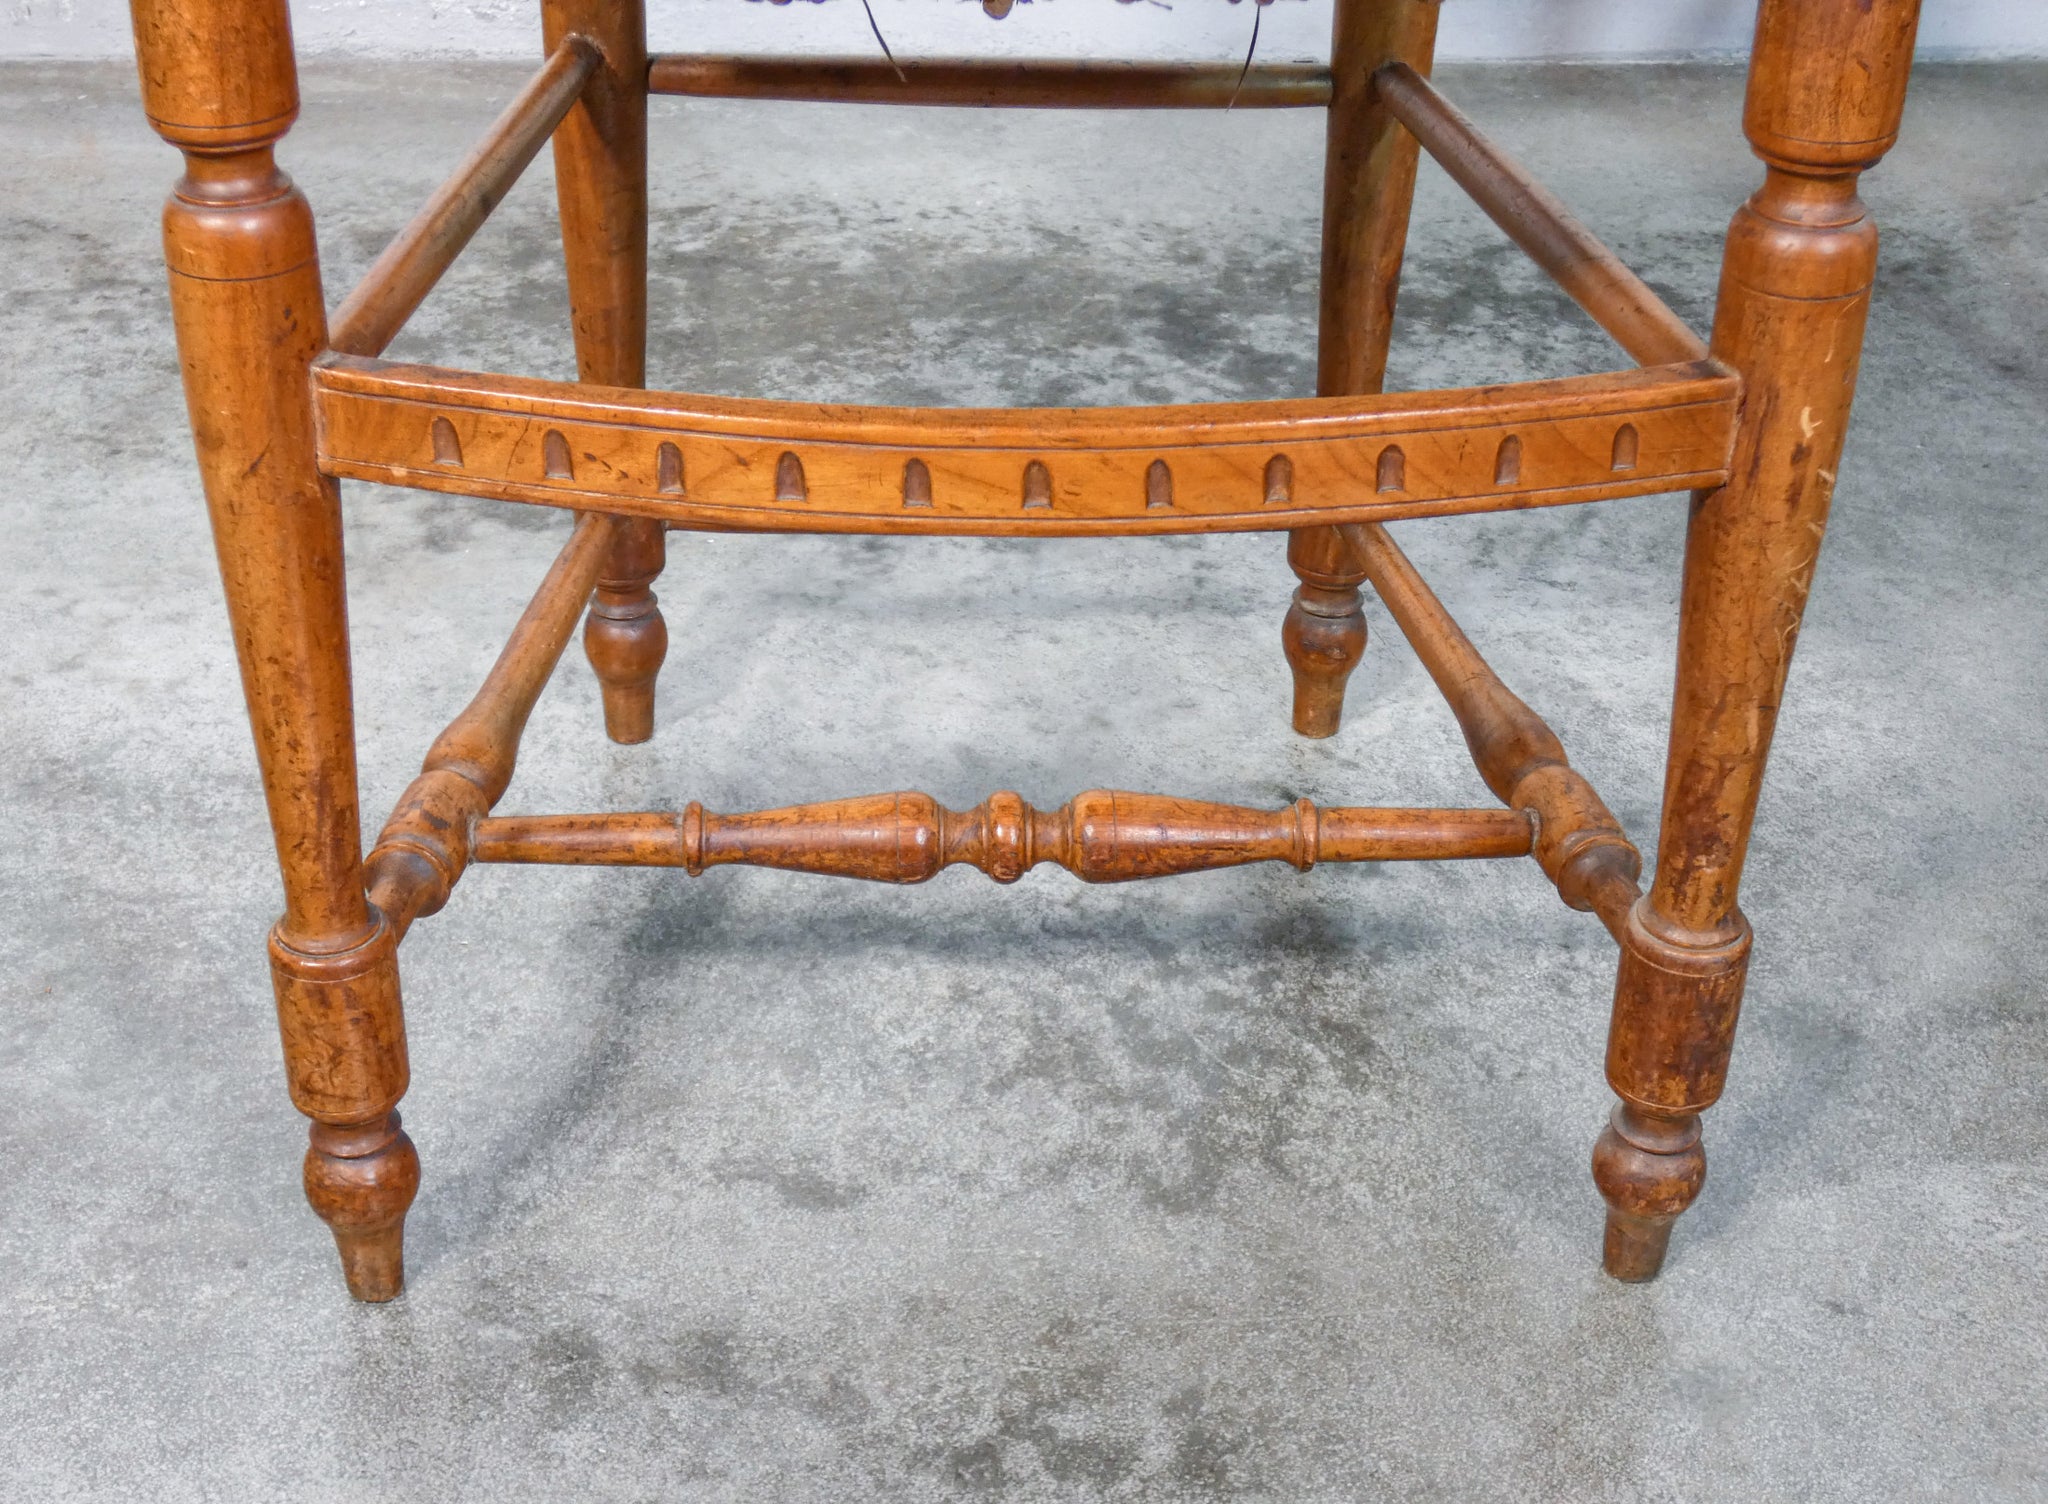 coppia sedie legno massello noce scolpito liberty schienale a lira epoca antica